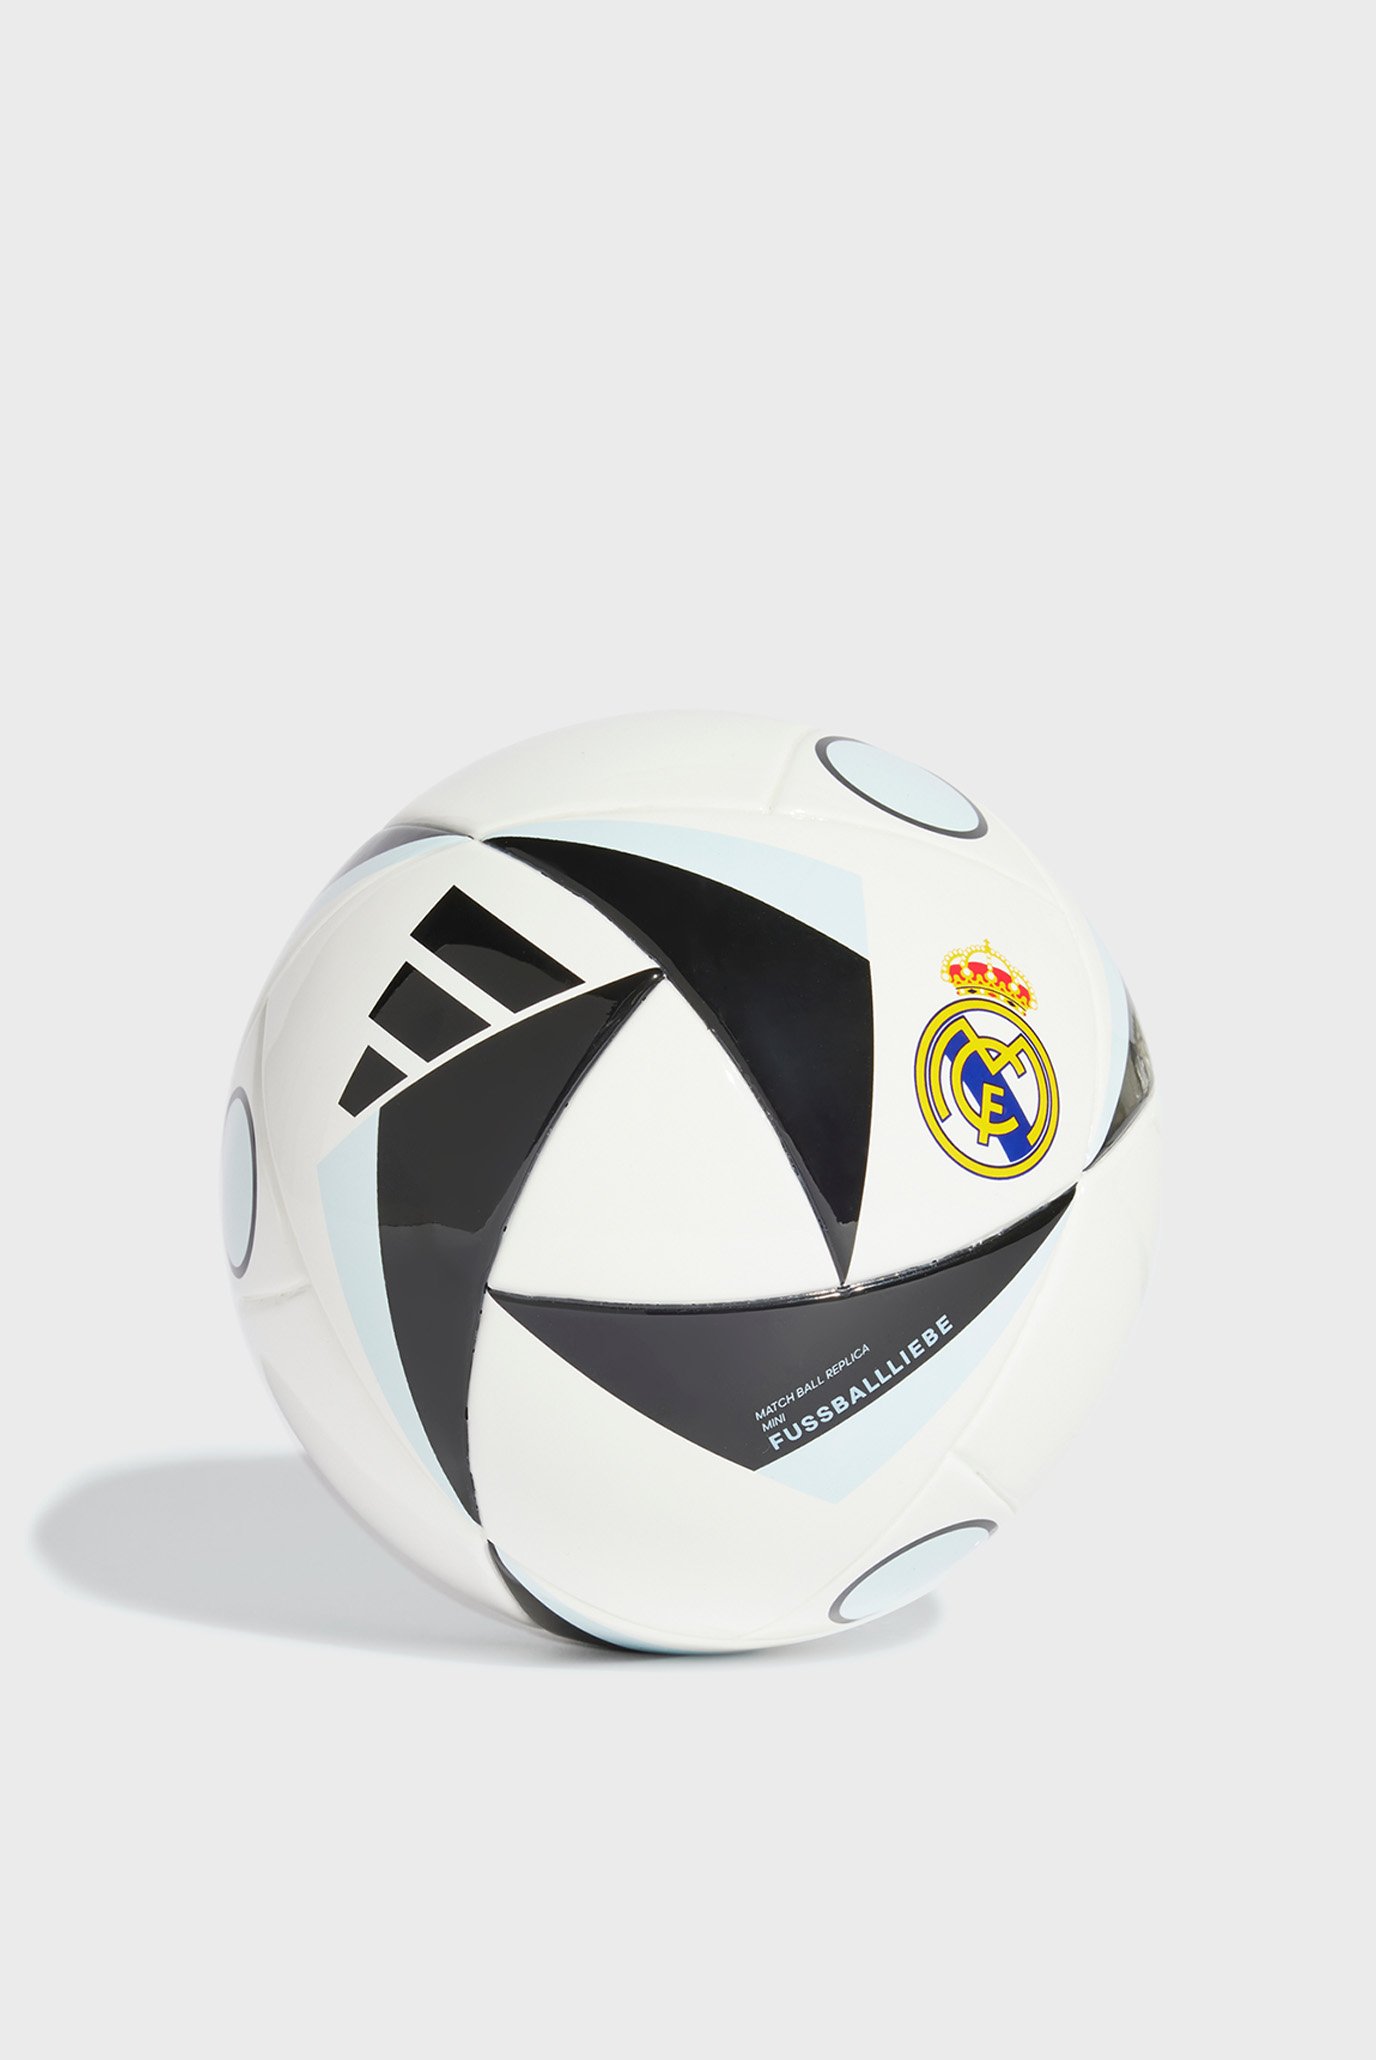 М'яч Real Madrid Home Mini 1